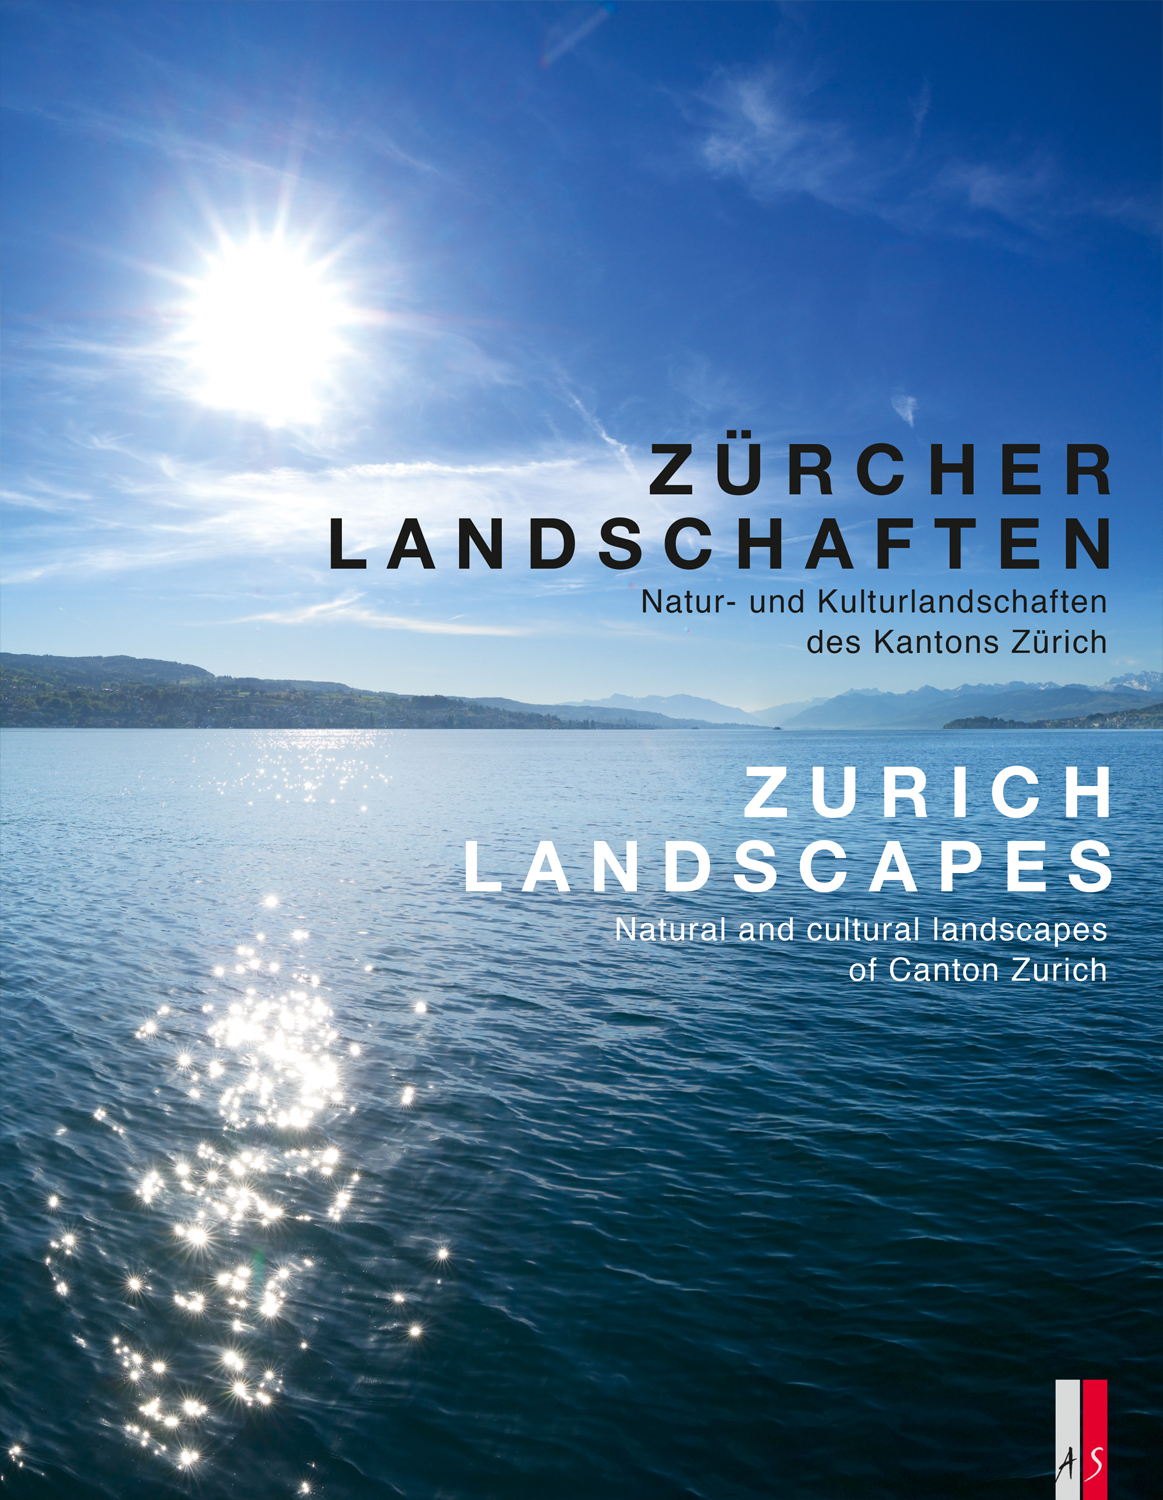 «Zürcher Landschaften» von diversen Autorinnen und Autoren, Zürich 2016, Signatur: 2016 B 12728